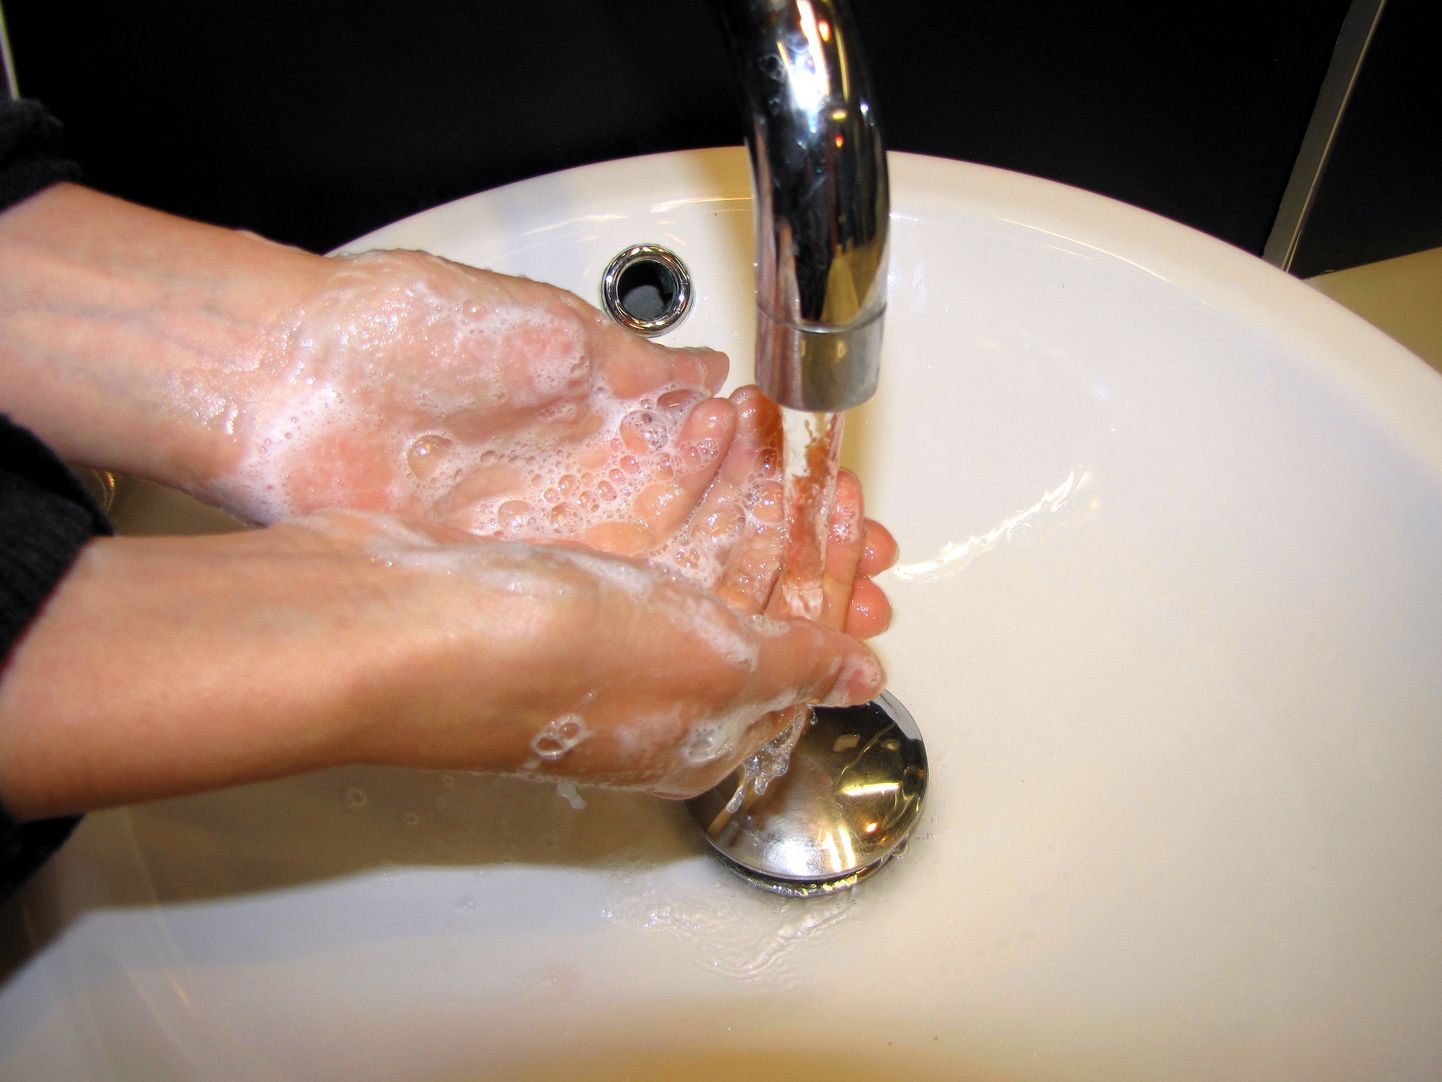 Kuigi on inimese oma valik, kui suurt tähelepanu ta hügieenile pöörab, on siiski teada fakt, et näiteks kätepesu aitab ennetada mitmetesse haigustesse nakatumist.